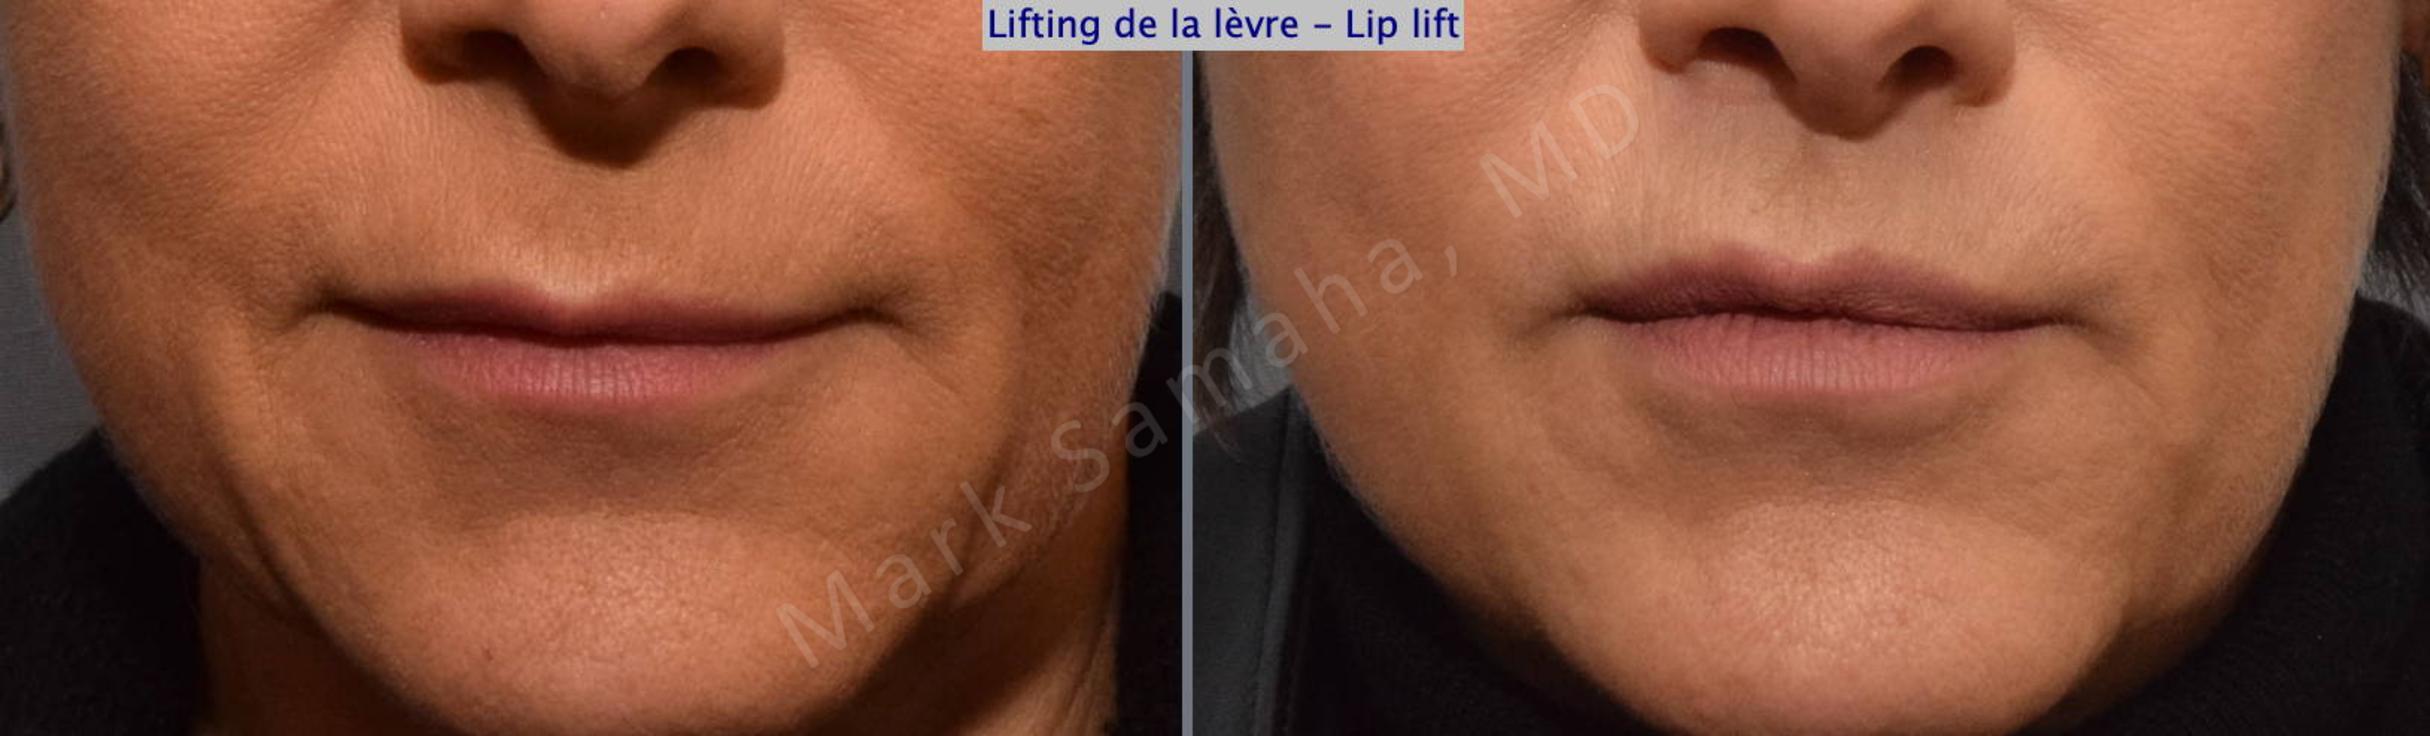 Before & After Lip Lift / Lifting de la lèvre supérieure Case 124 View #1 View in Mount Royal, QC